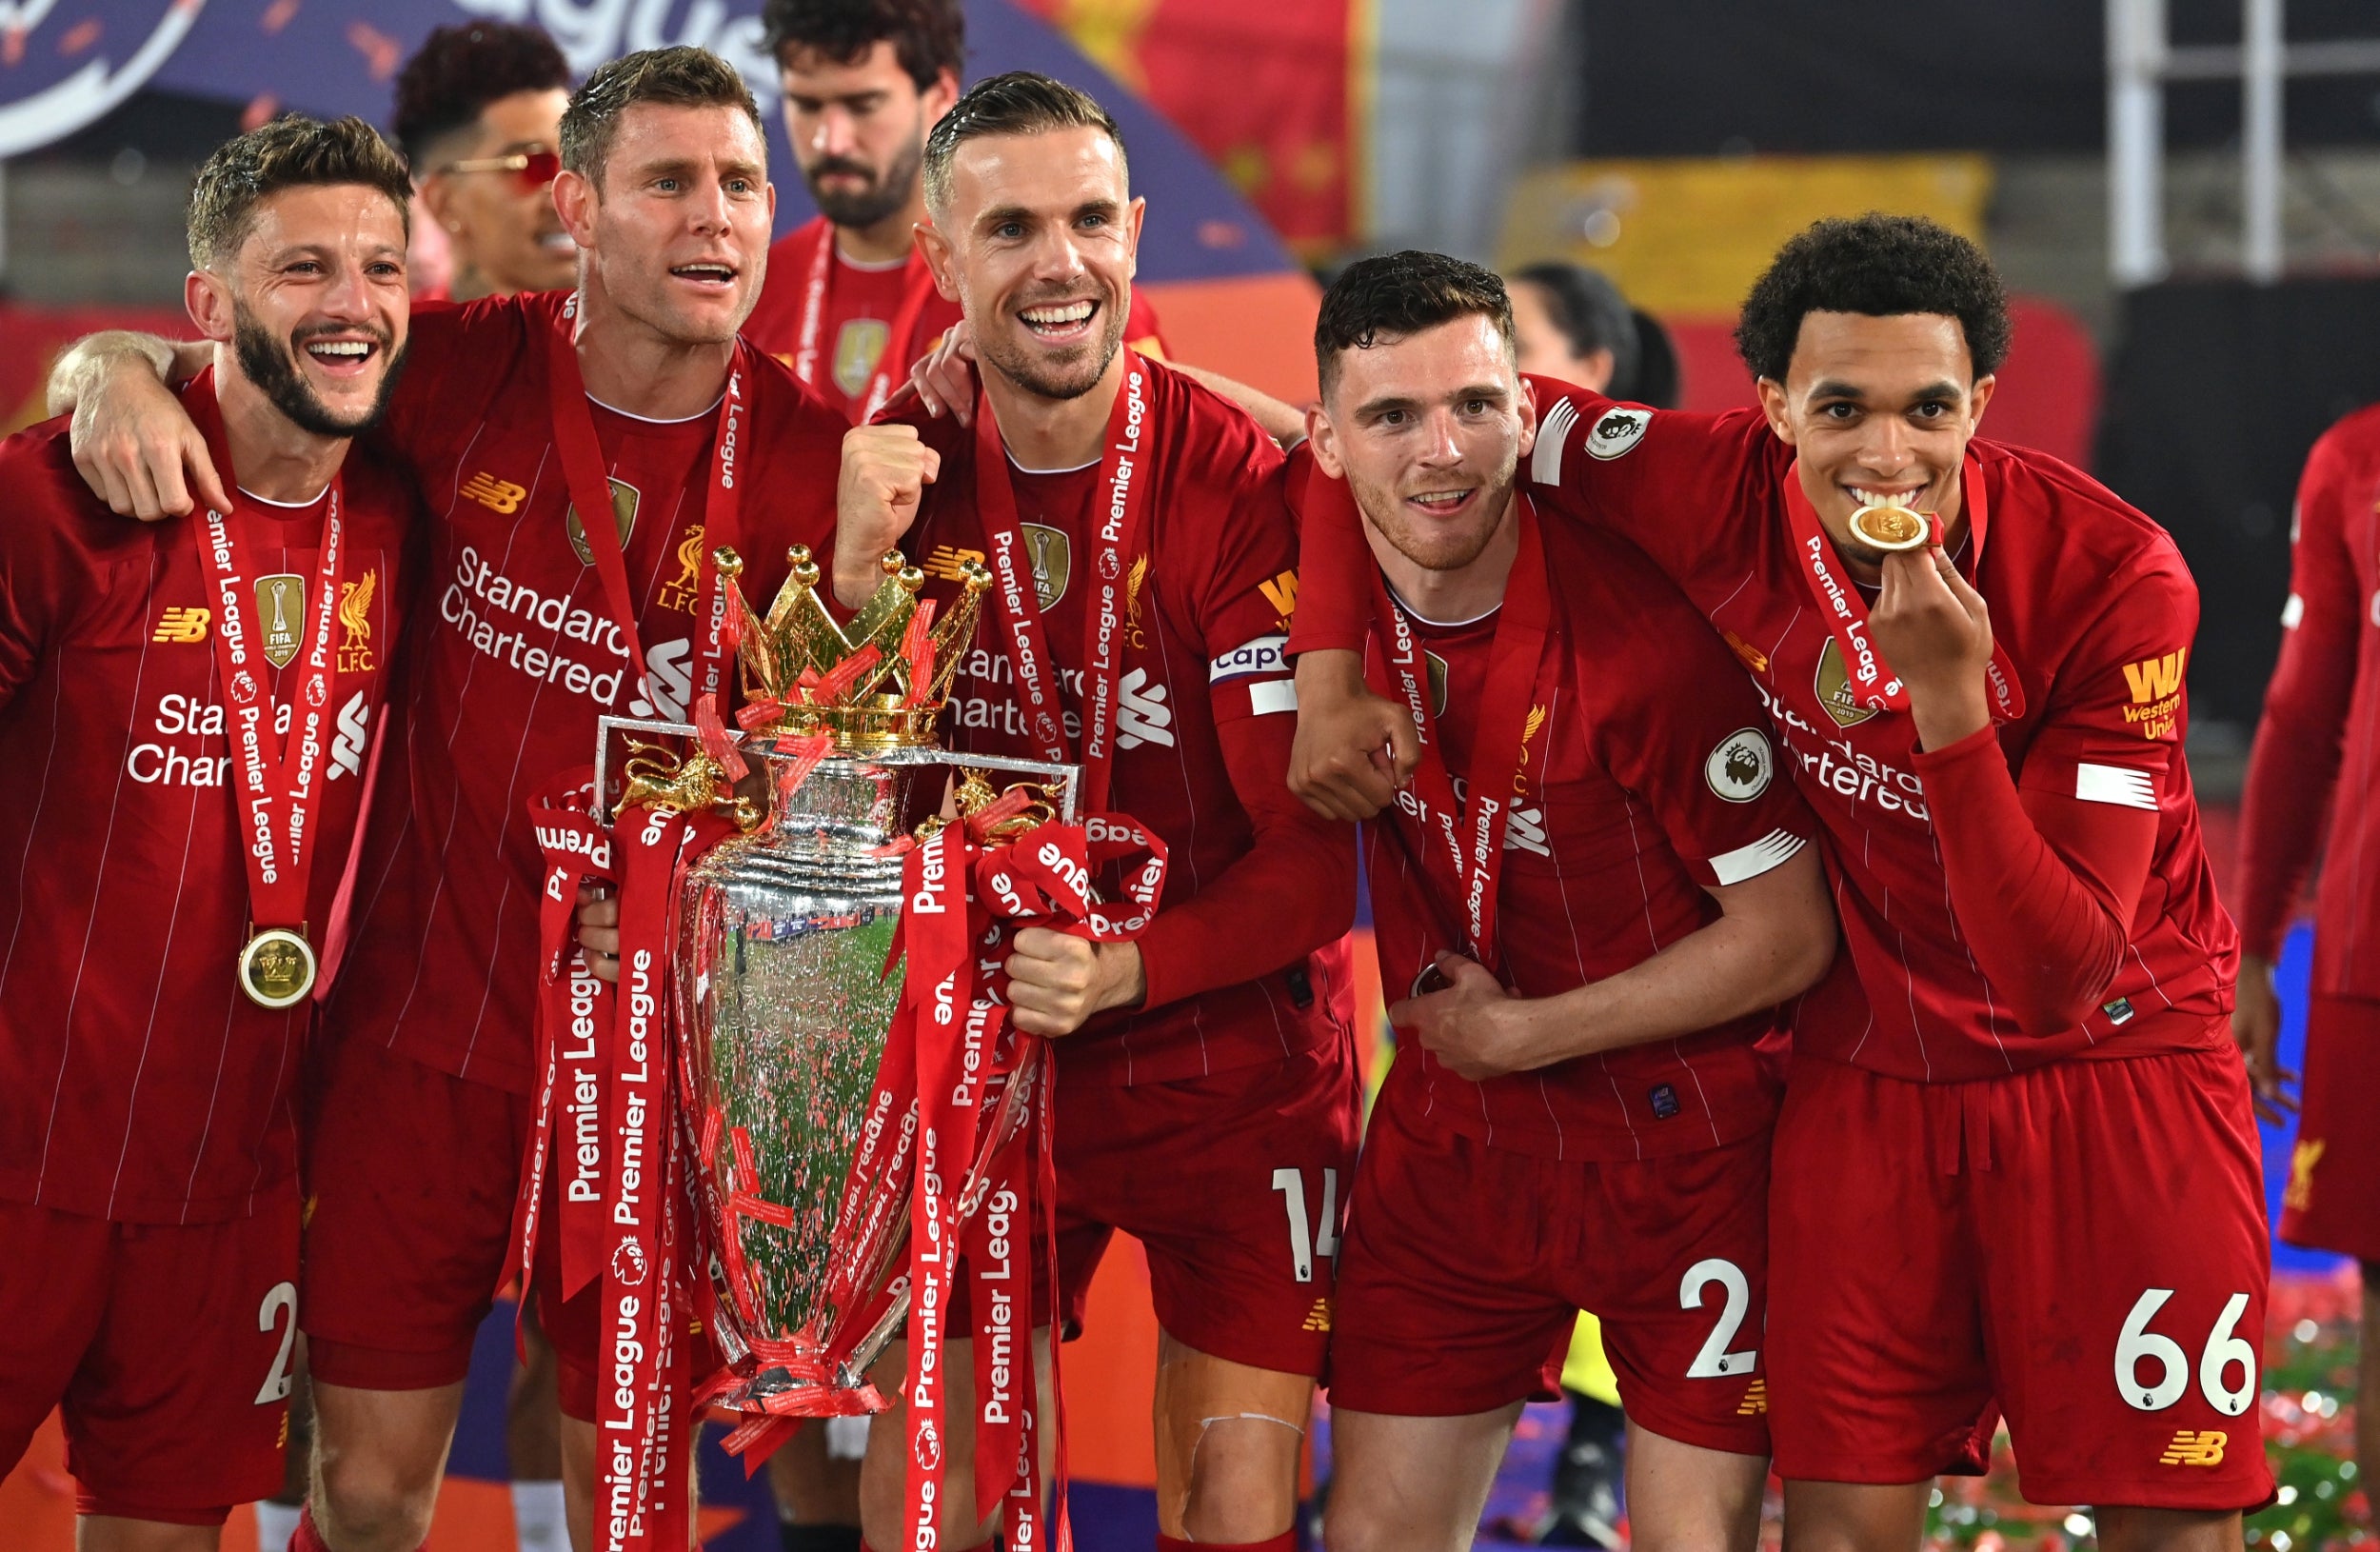 Liverpool lift the Premier League trophy